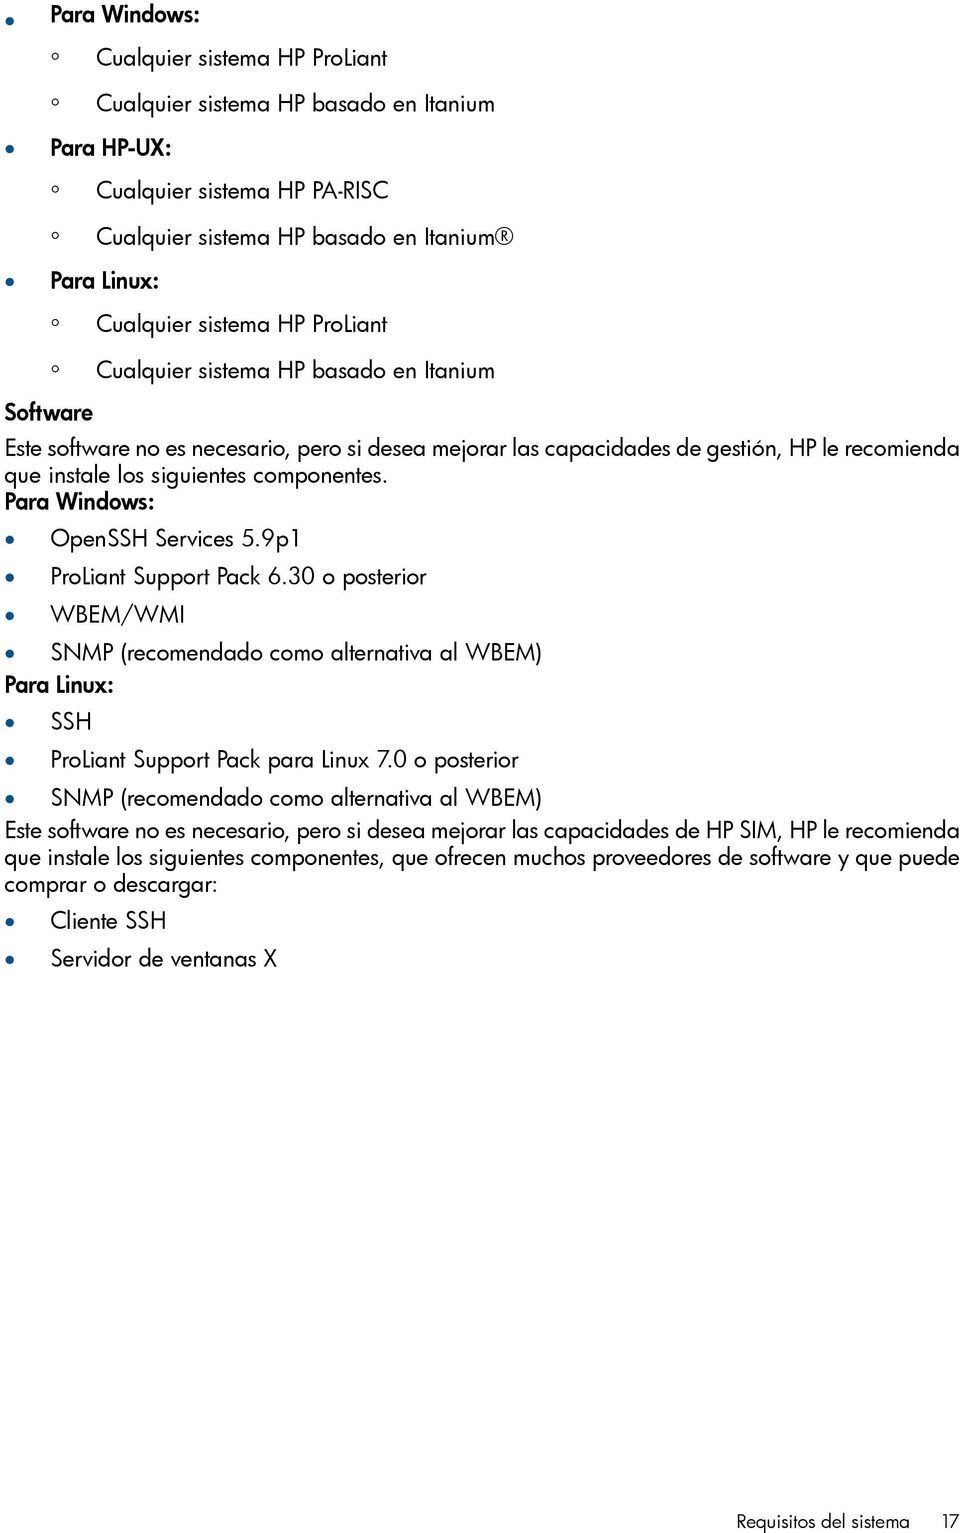 Para Windows: OpenSSH Services 5.9p1 ProLiant Support Pack 6.30 o posterior WBEM/WMI SNMP (recomendado como alternativa al WBEM) Para Linux: SSH ProLiant Support Pack para Linux 7.